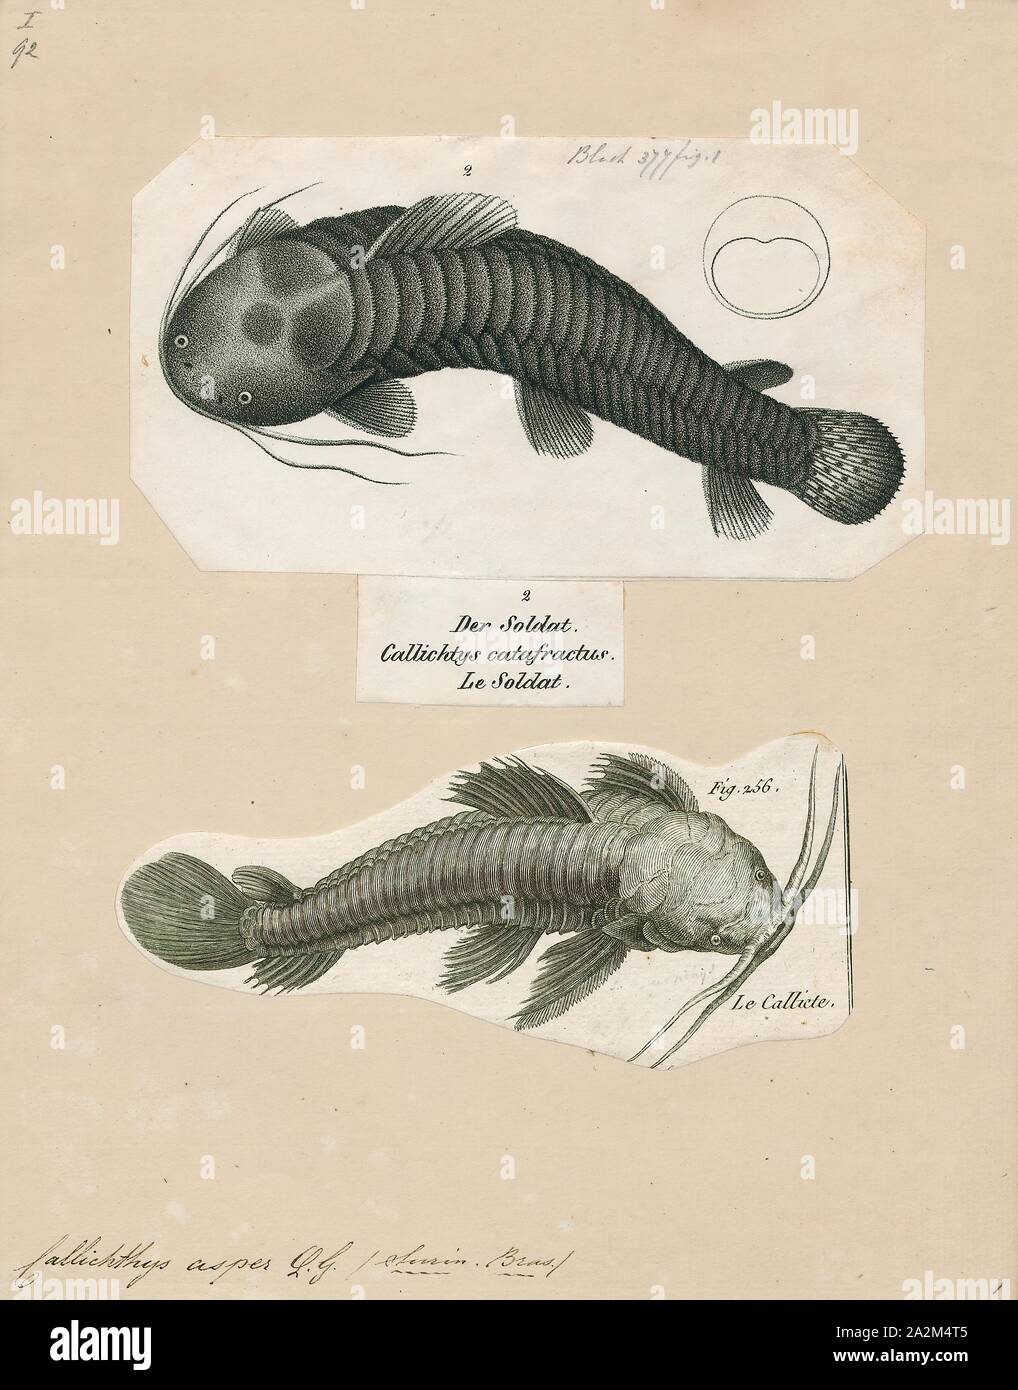 Callichthys asper, Print Stock Photo